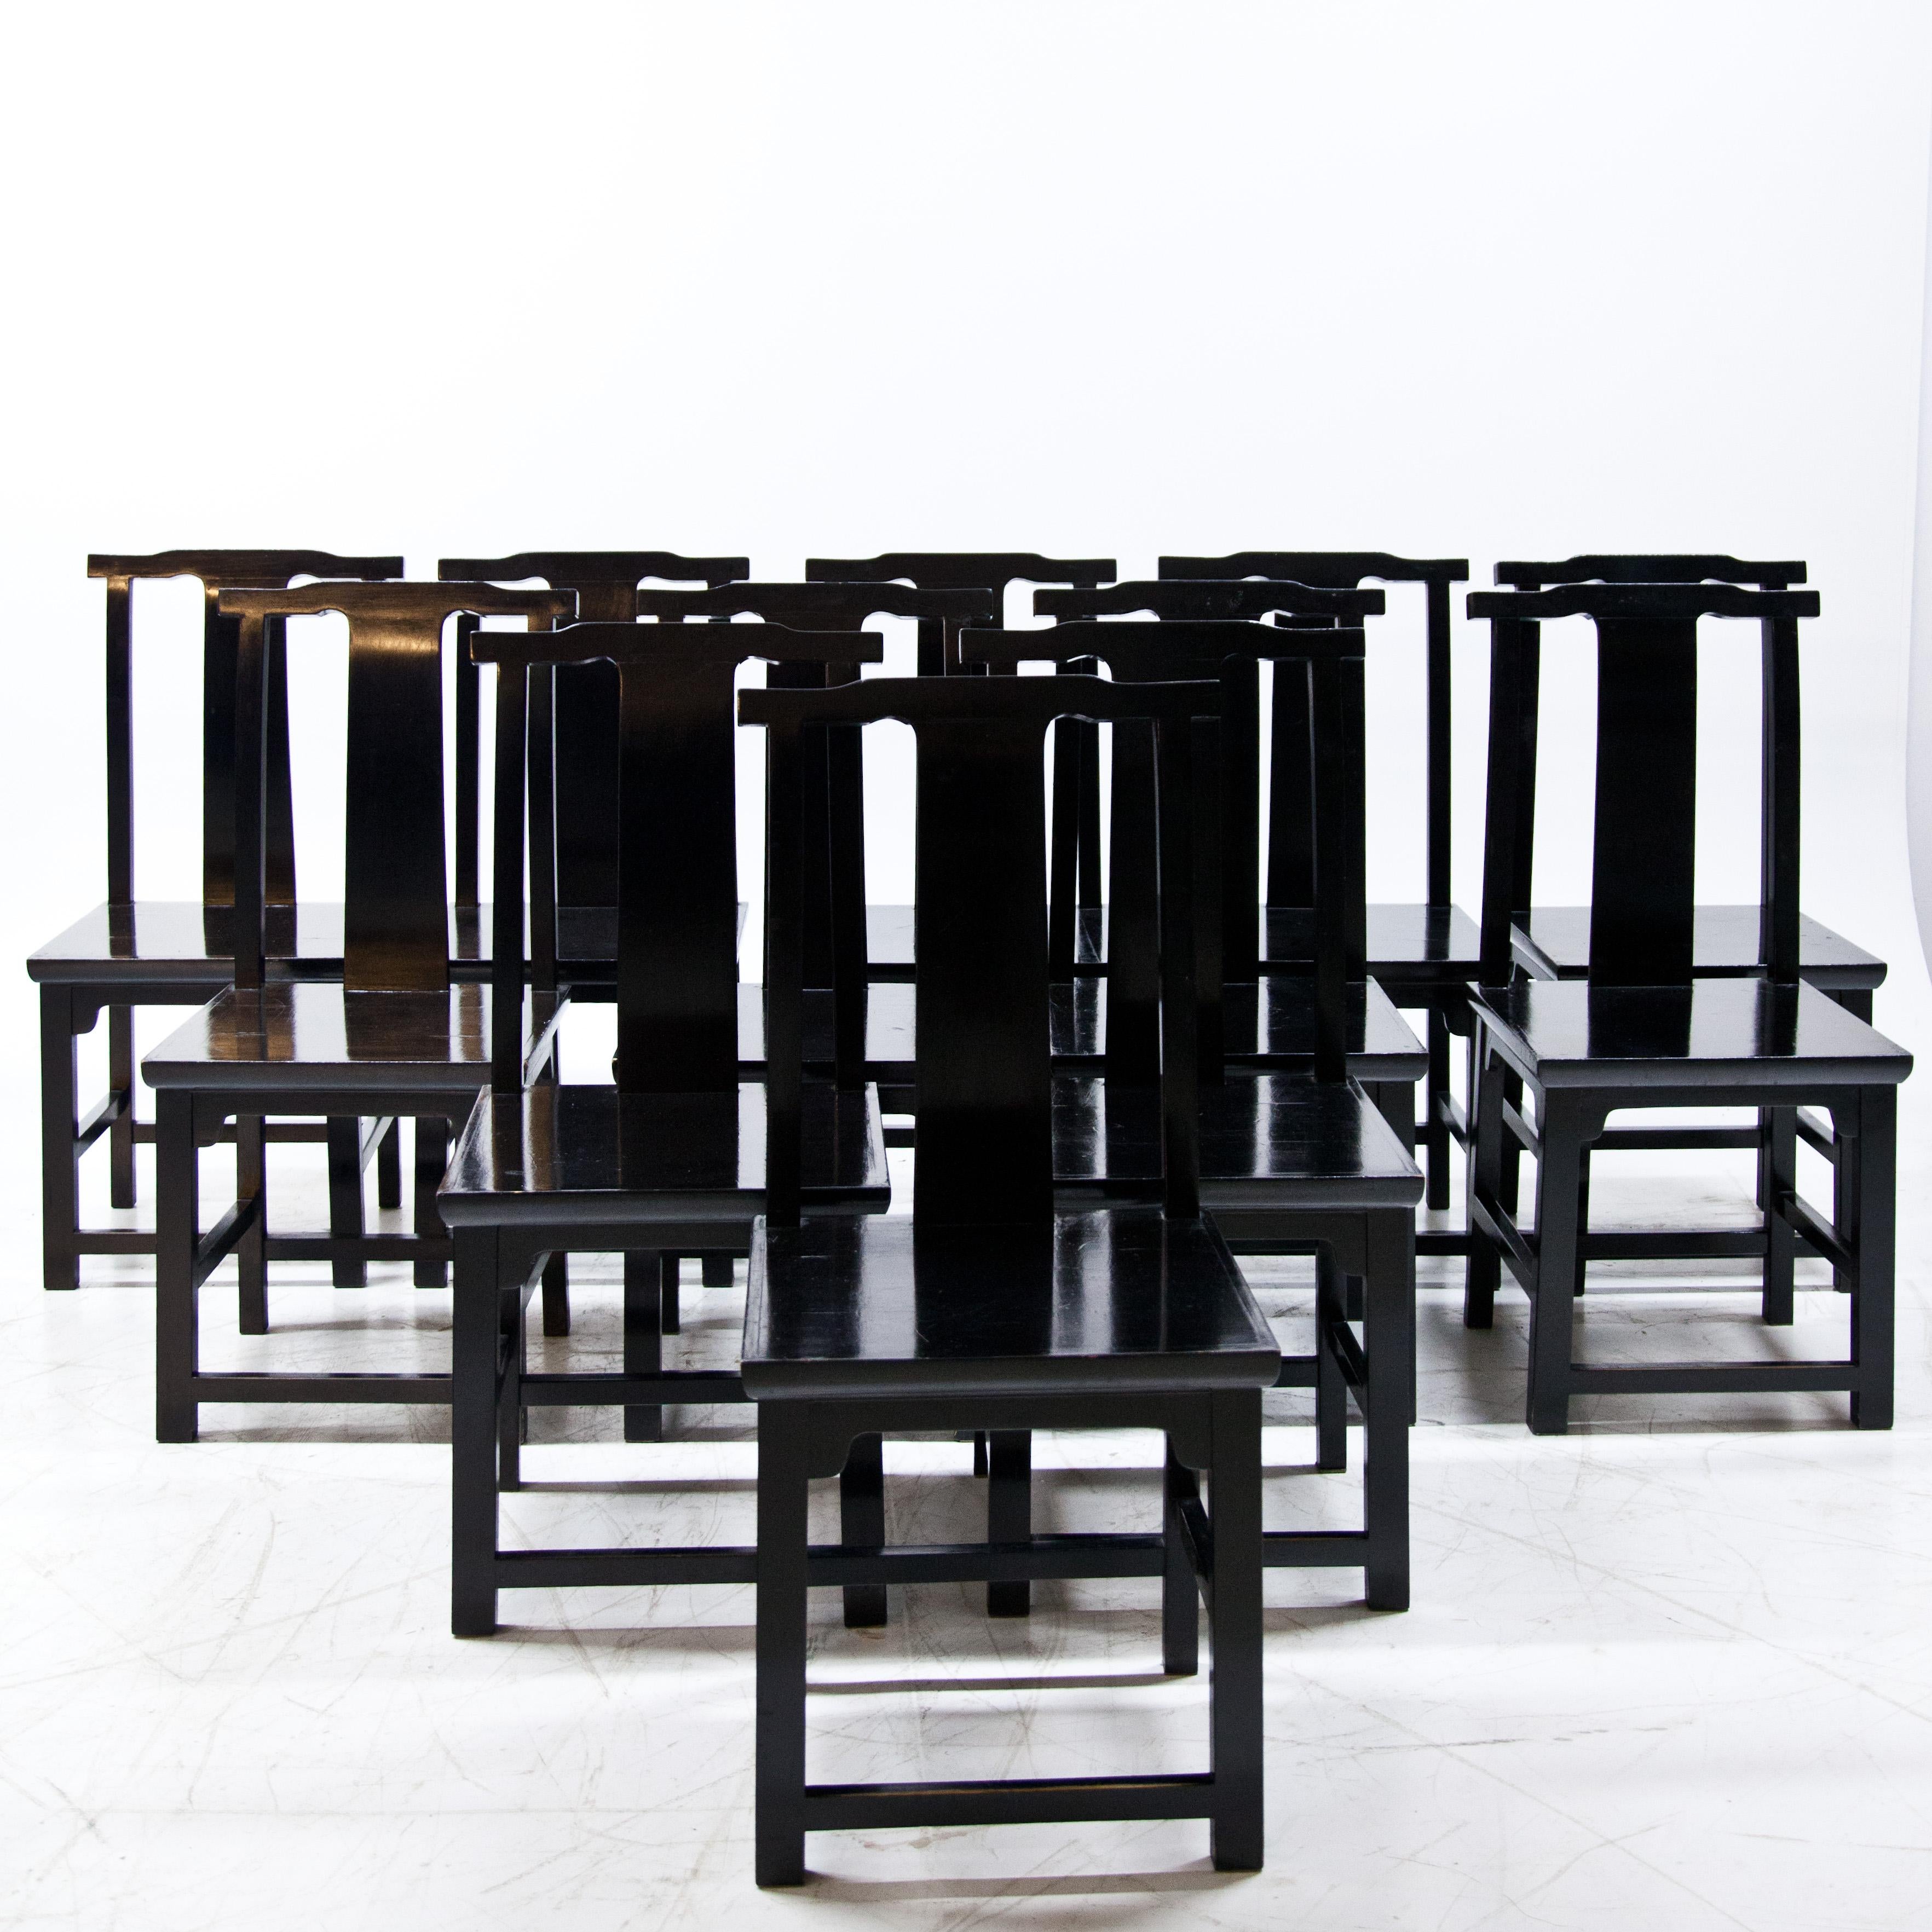 Satz von 12 schwarz lackierten Holzstühlen im japanischen Stil mit hohen Rückenlehnen und geraden Sitzen.